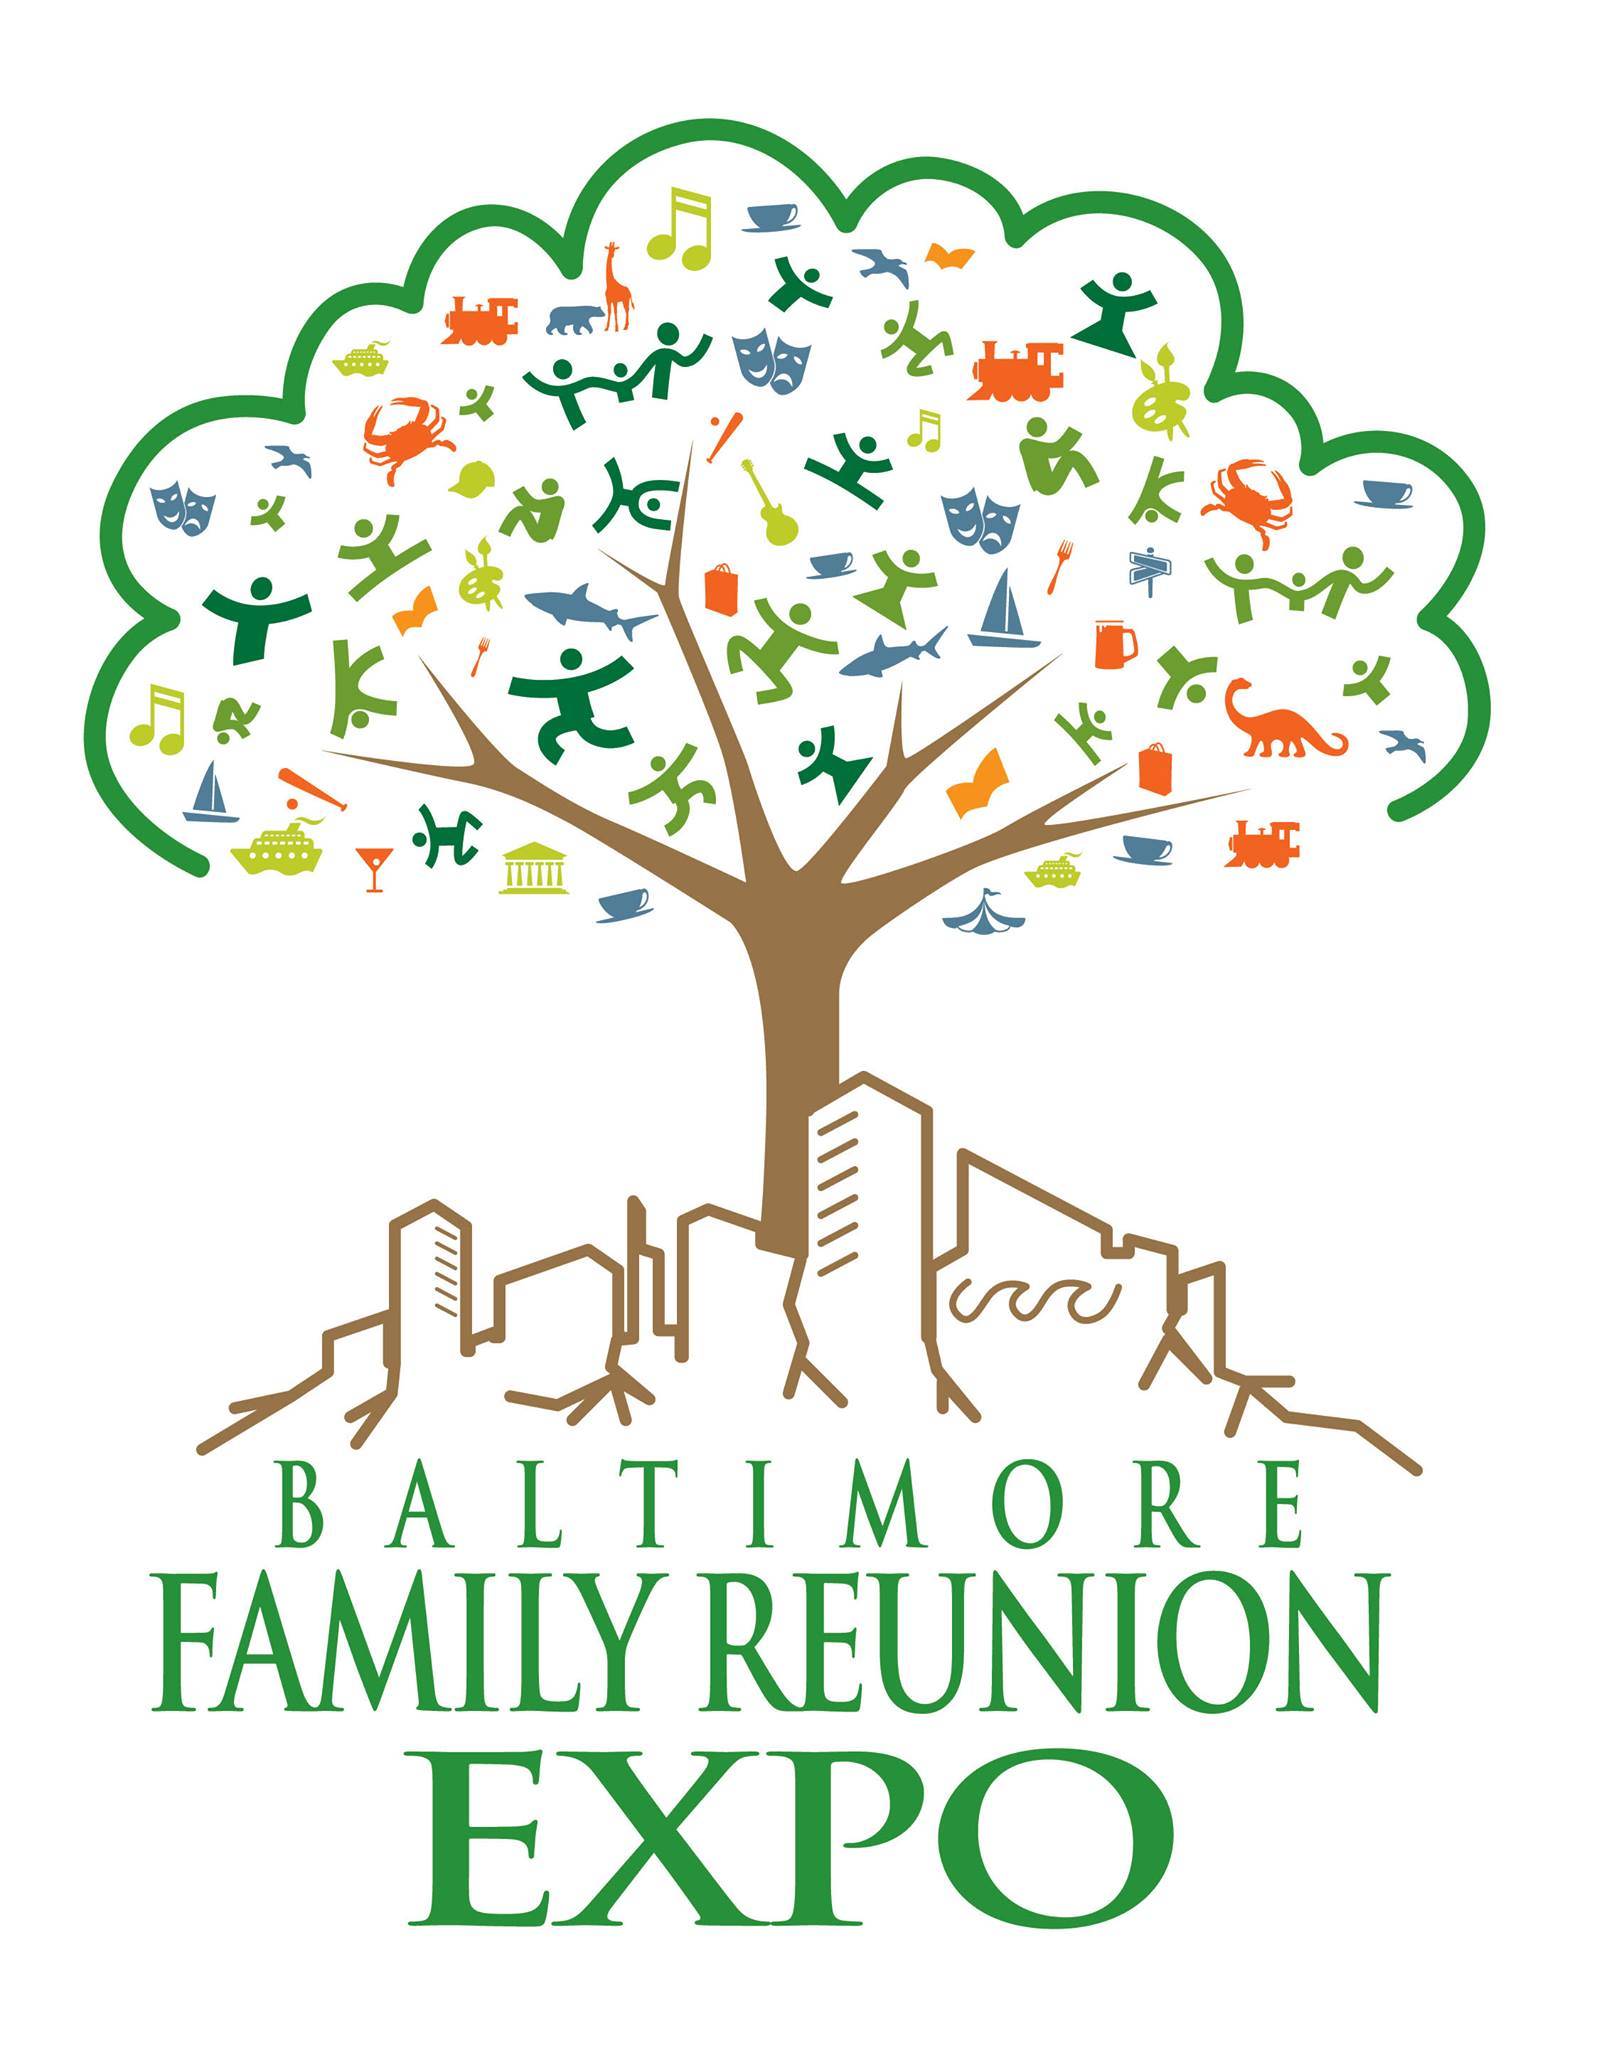 Baltimore family reunion expo logo.